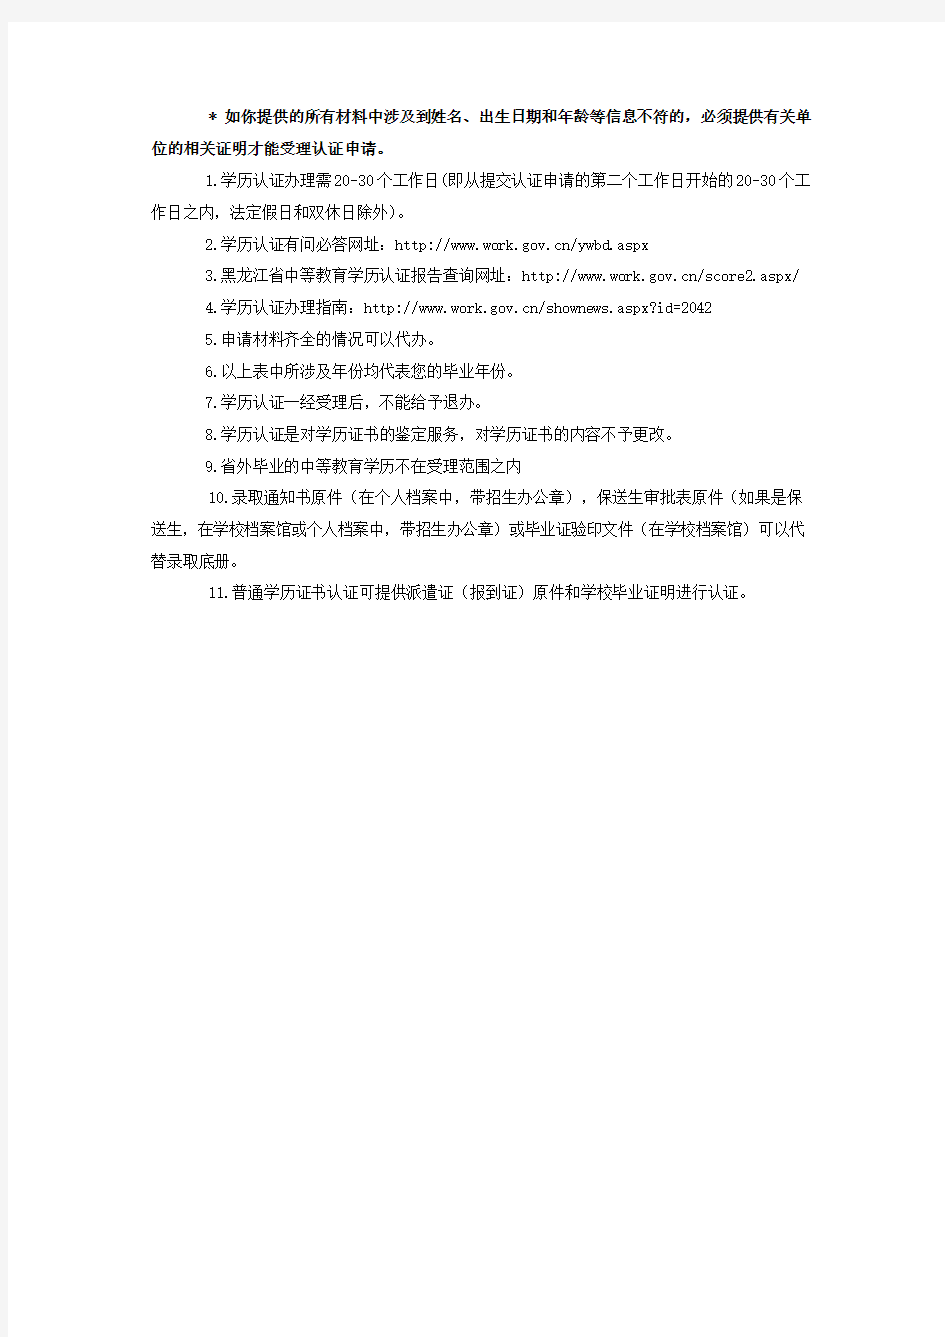 黑龙江省中等学历认证申请材料分类说明